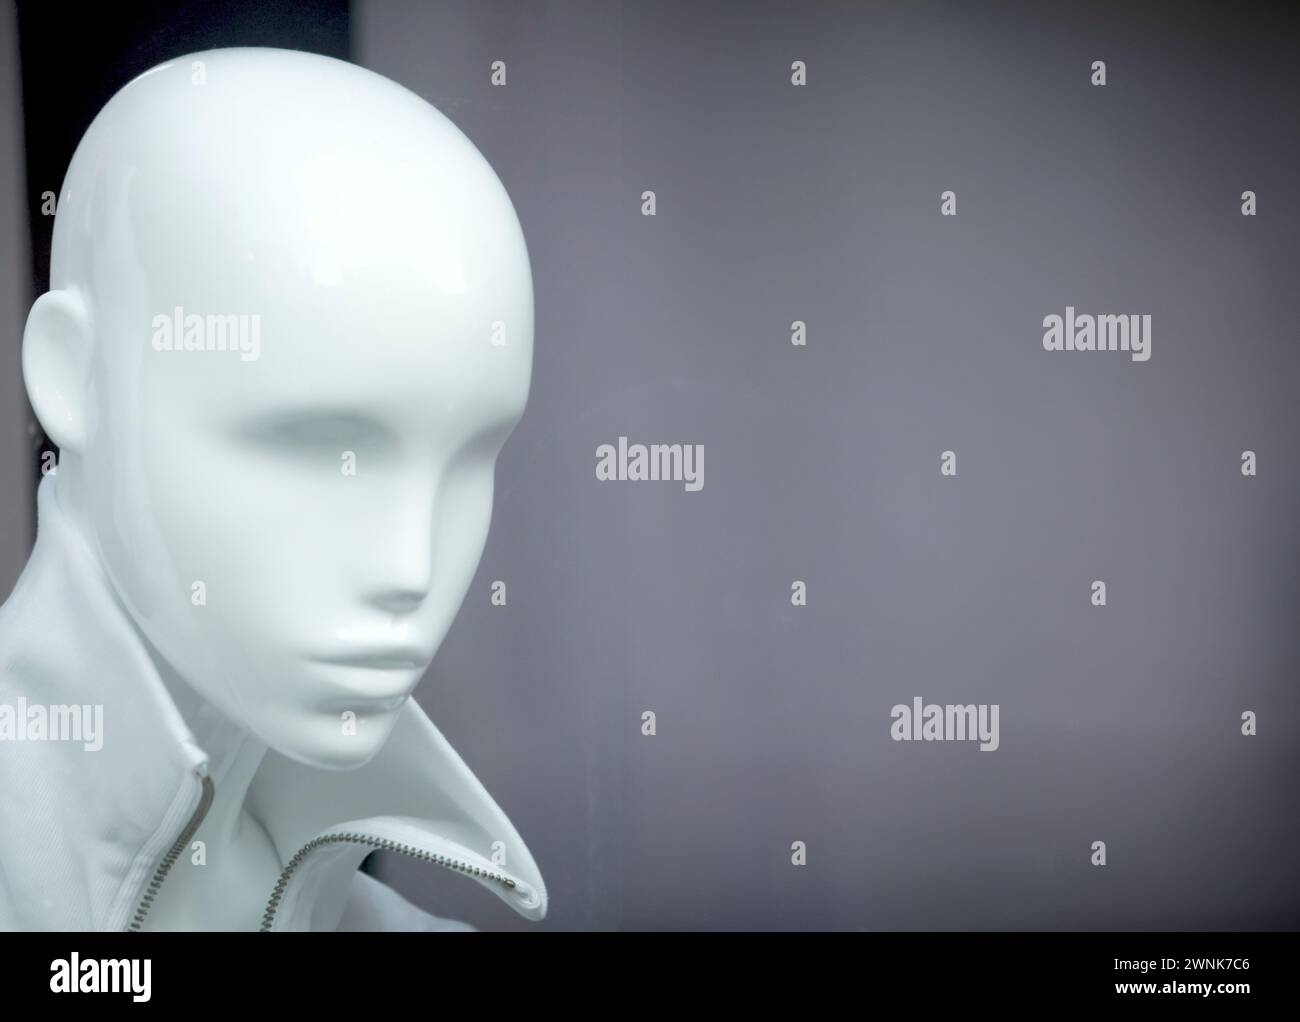 Immagine concettuale di una figura simile ad un automa, che rappresenta la profondità e la complessità nascoste dell'intelligenza artificiale Foto Stock